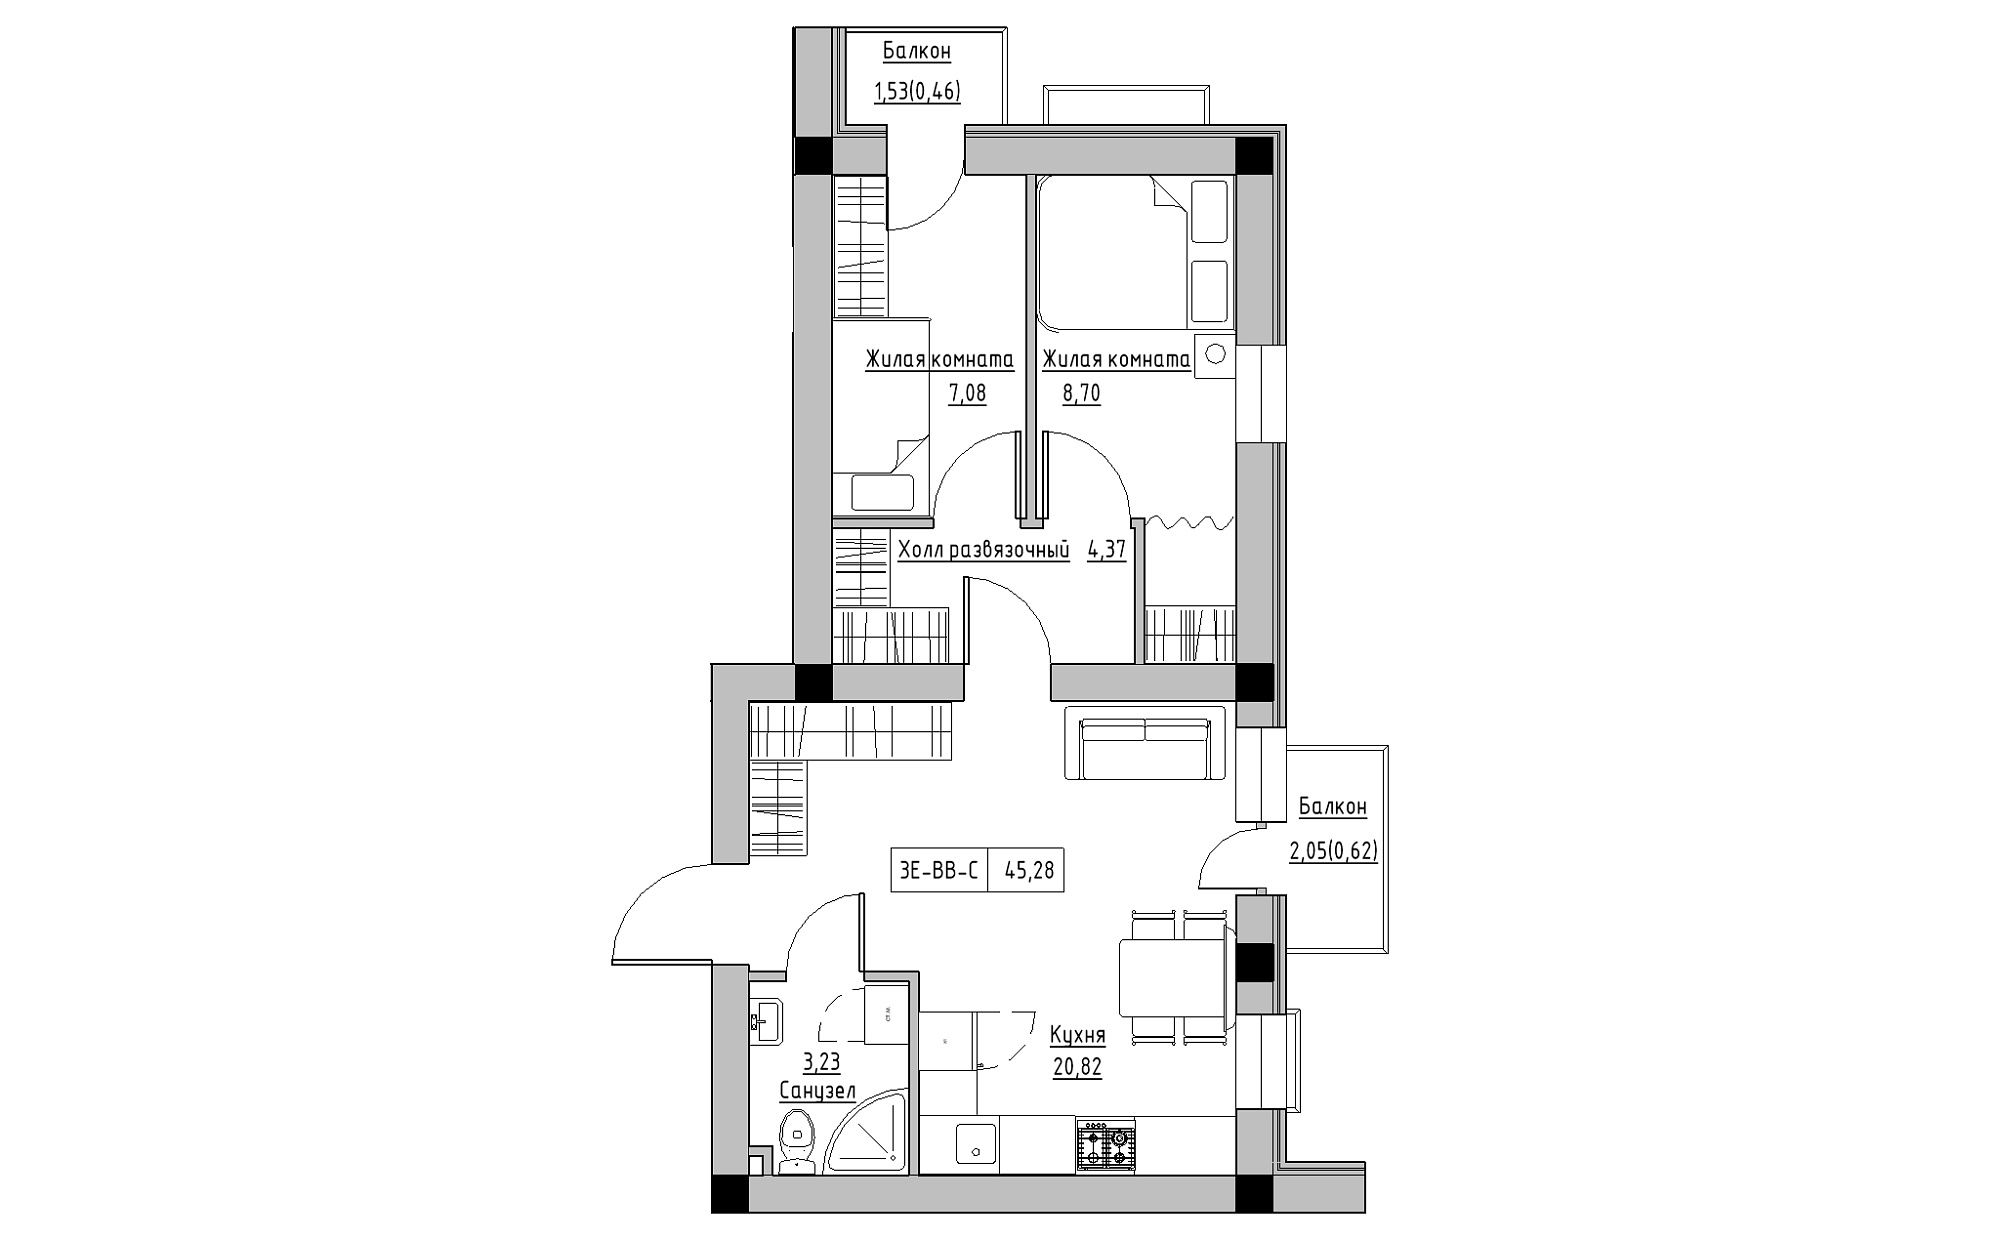 Планировка 3-к квартира площей 45.28м2, KS-022-05/0011.